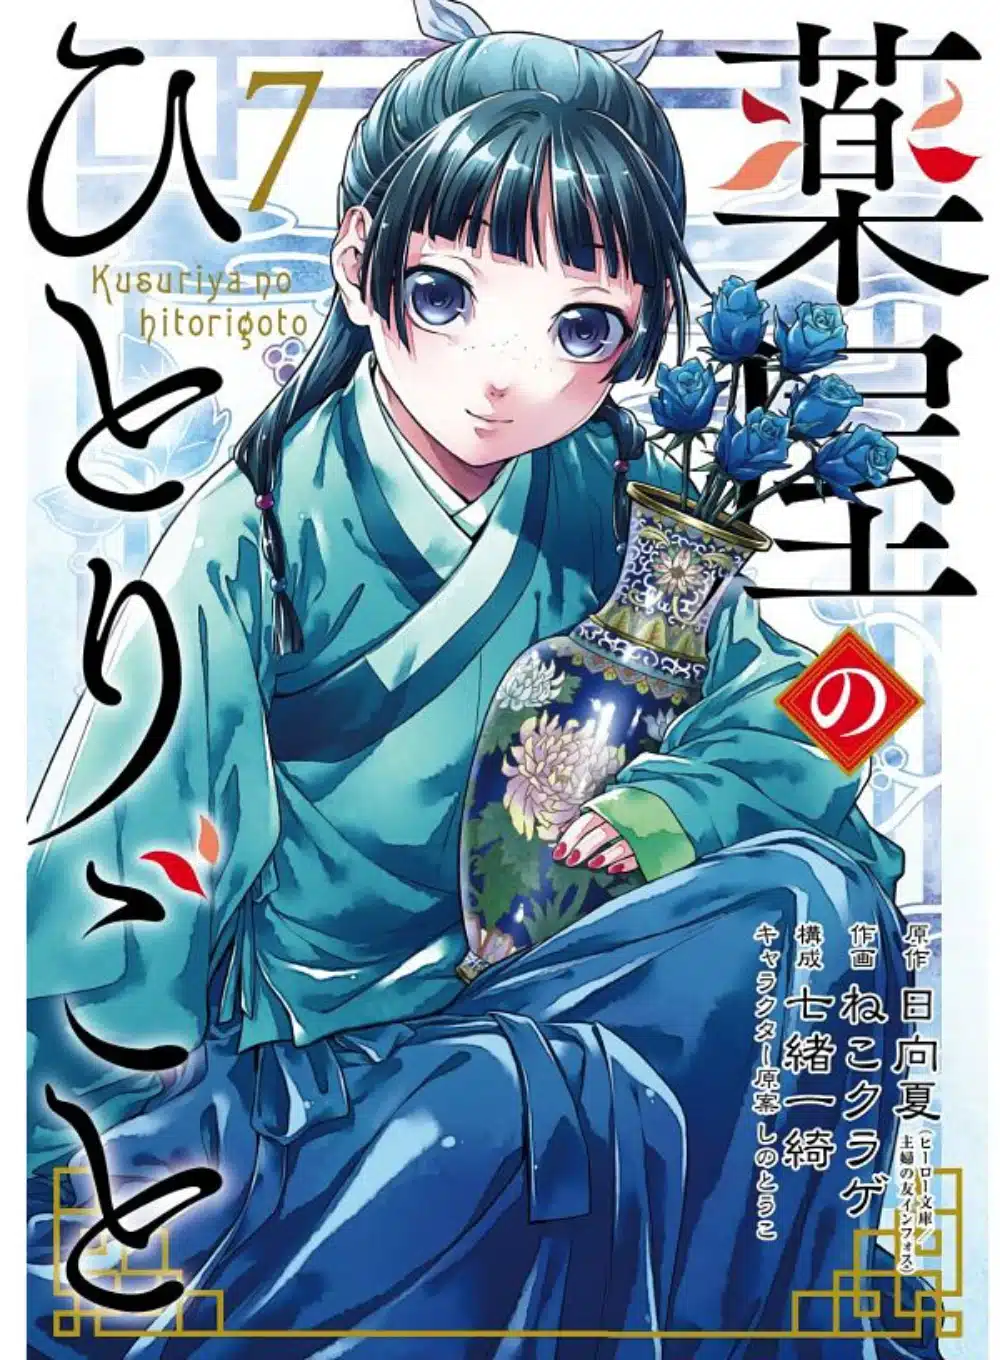 Kusuriya No Hitorigoto Manga Portada 01